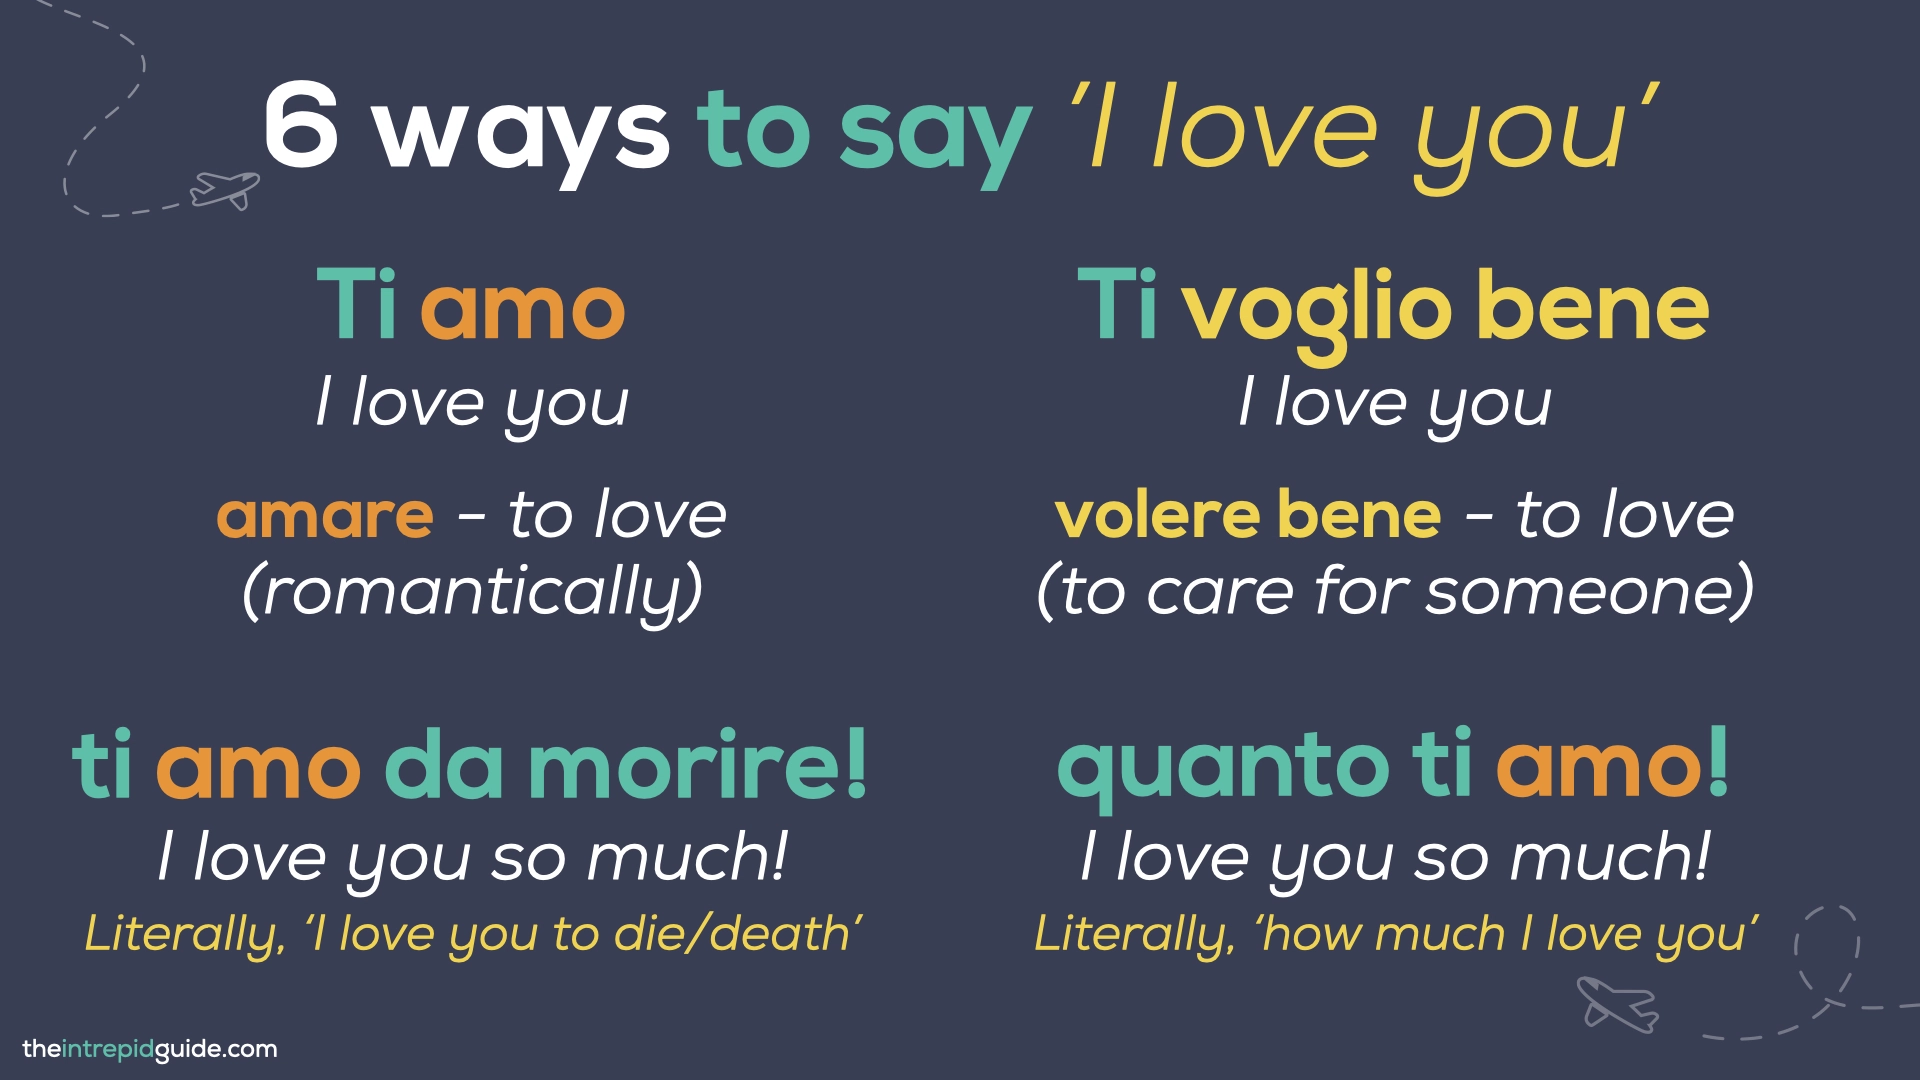 How to say 'I love you' in Italian - Ti Amo vs. Ti Voglio Bene